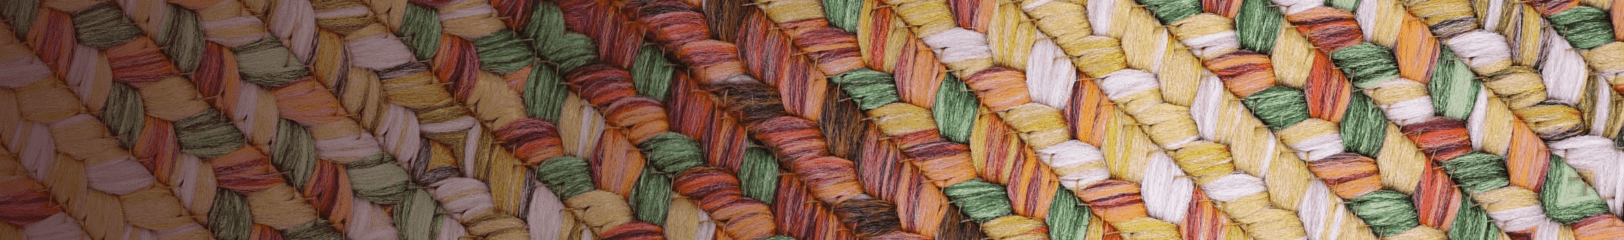 Wool - Braided Rugs